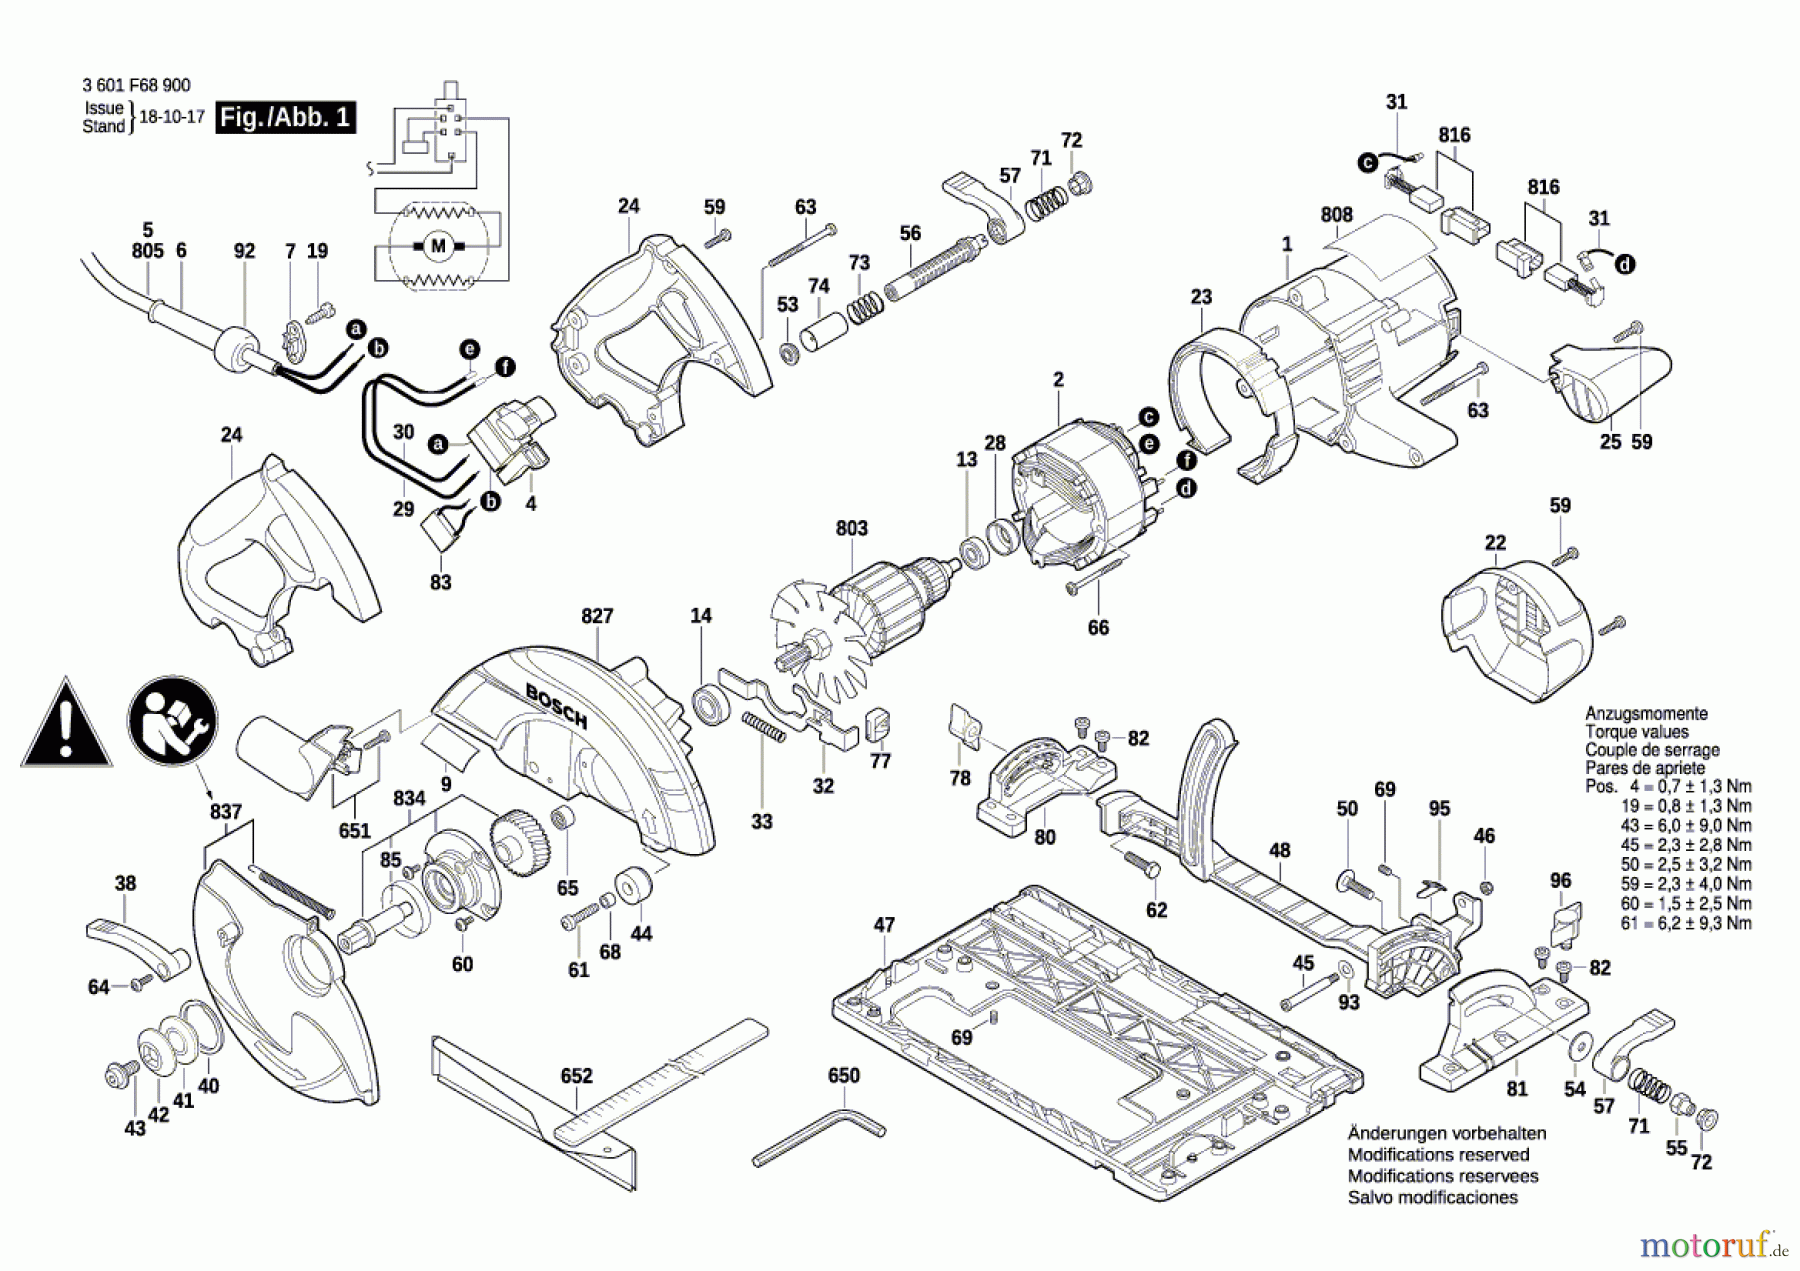  Bosch Werkzeug Handkreissäge GKS 65 G Seite 1